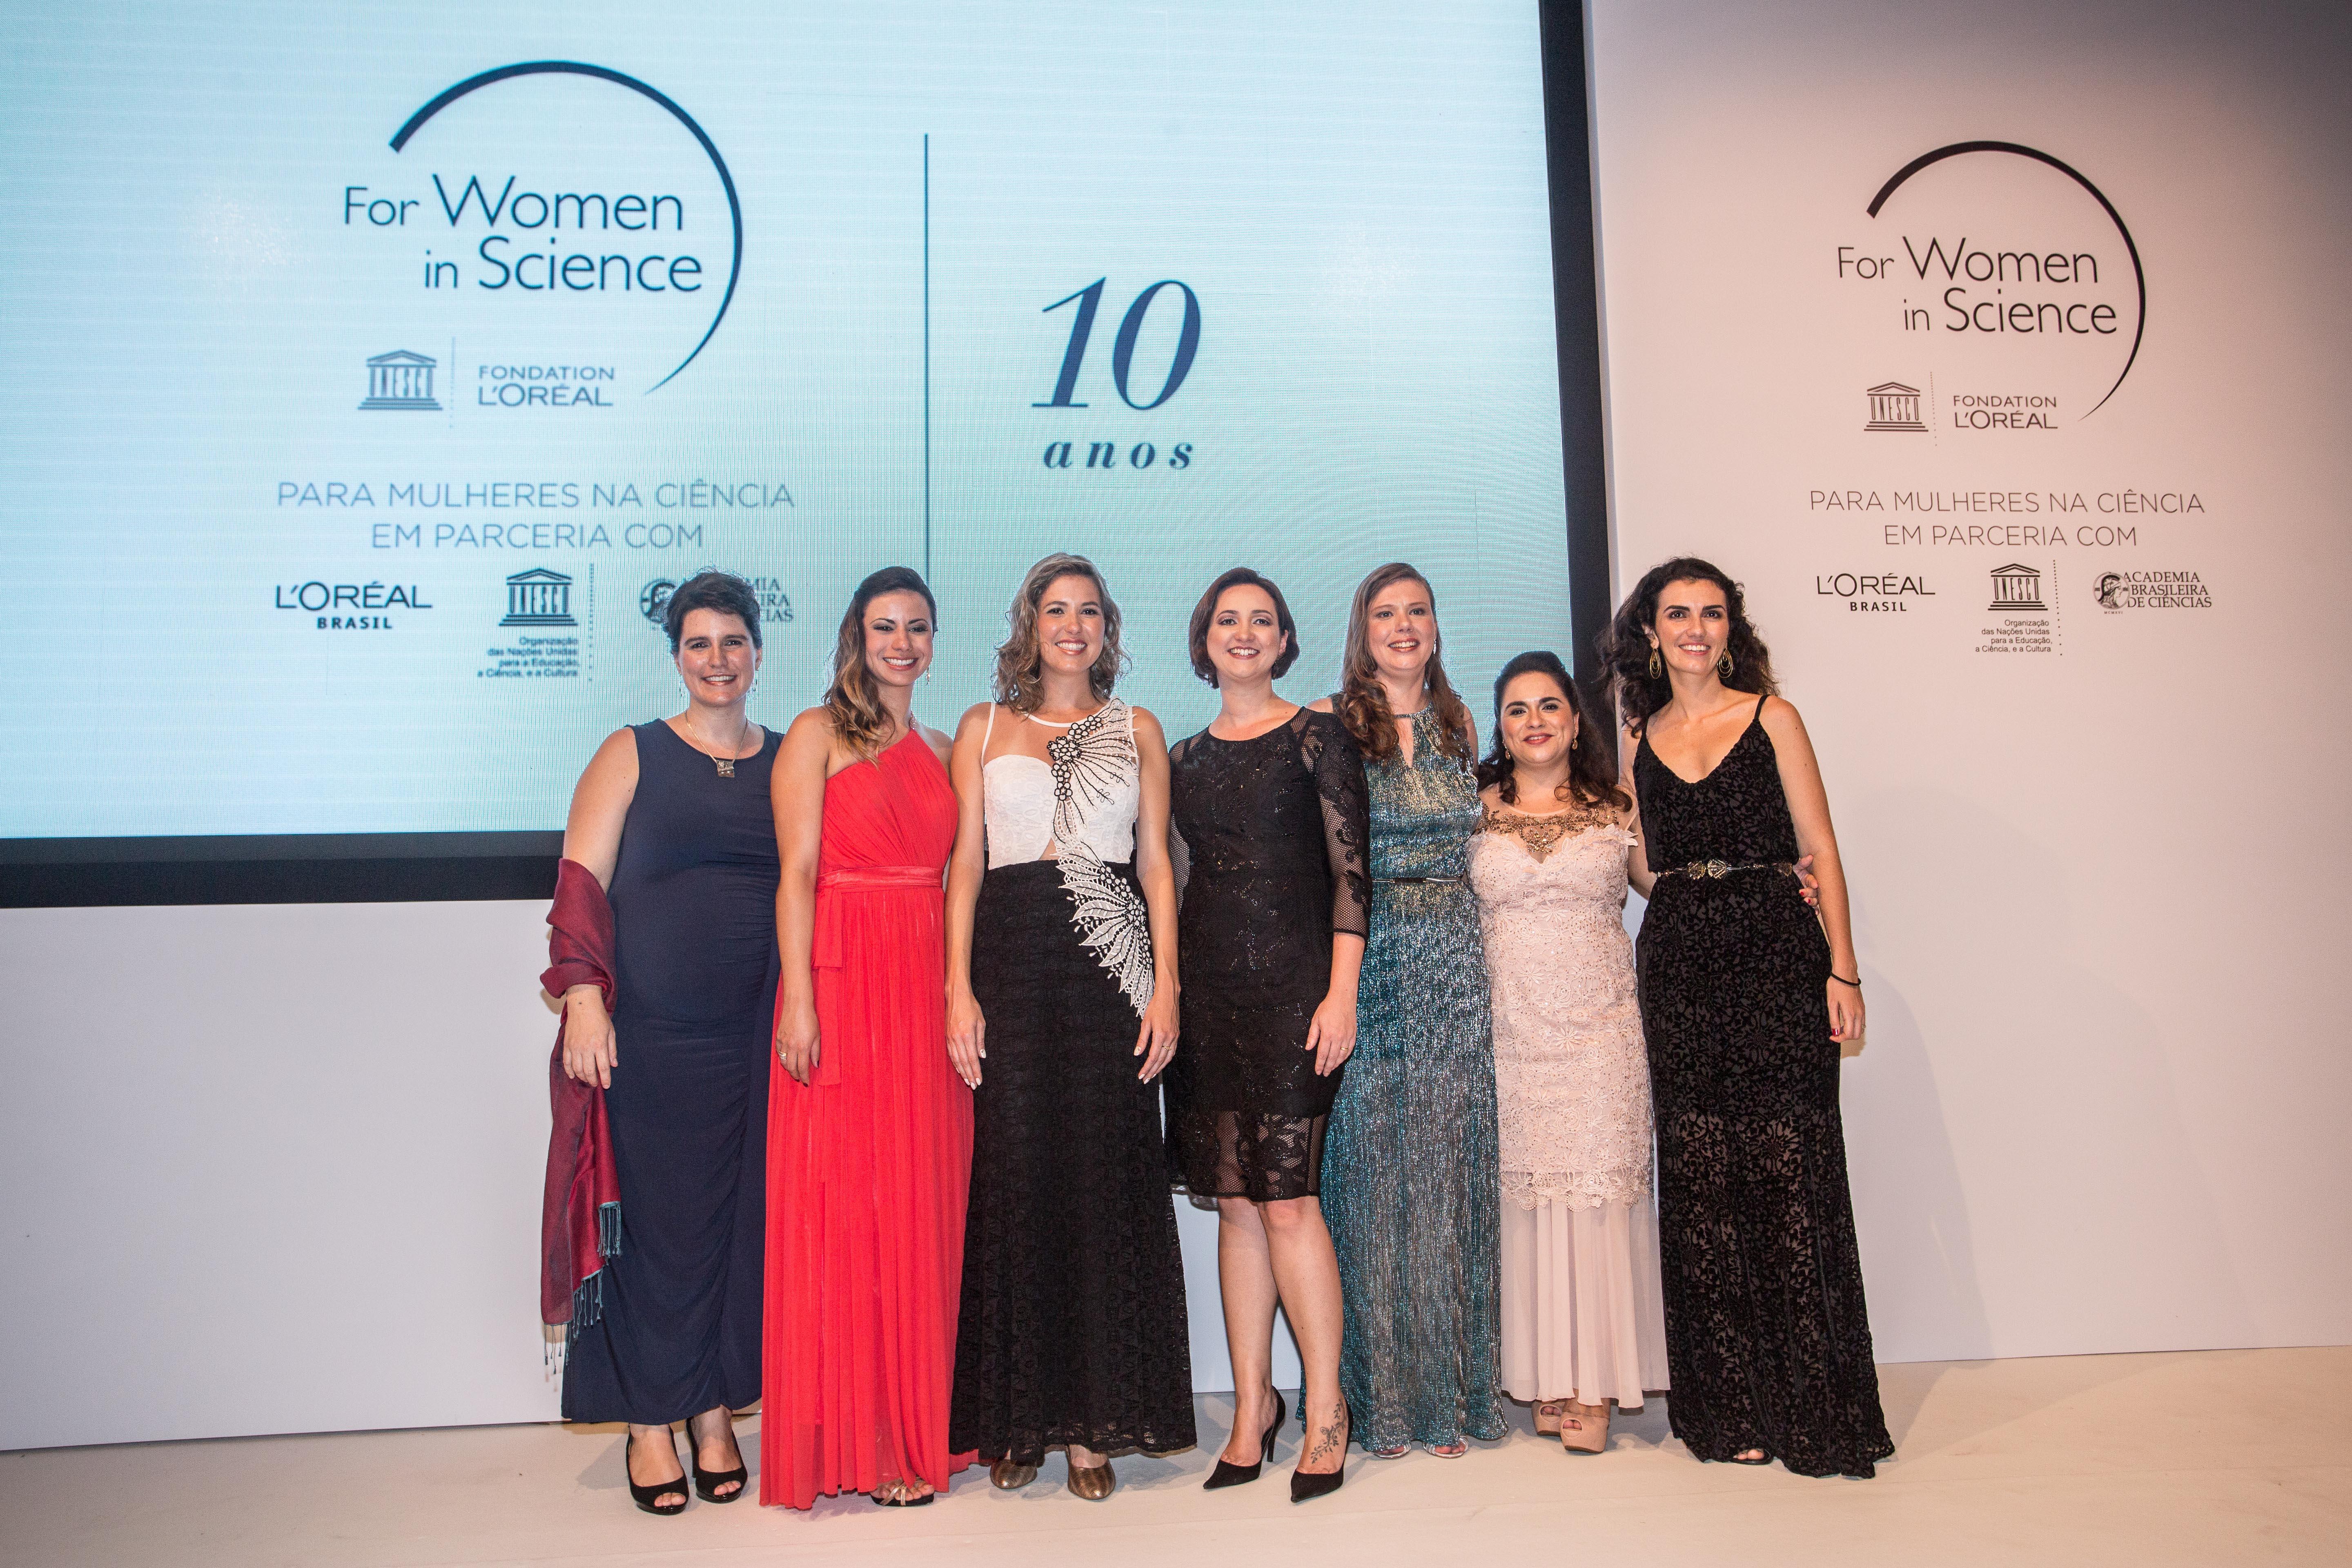 Professora Daiana Ávila e demais "fellows" na Premiação "Para Mulheres na Ciência" - L'Oreal-UNESCO